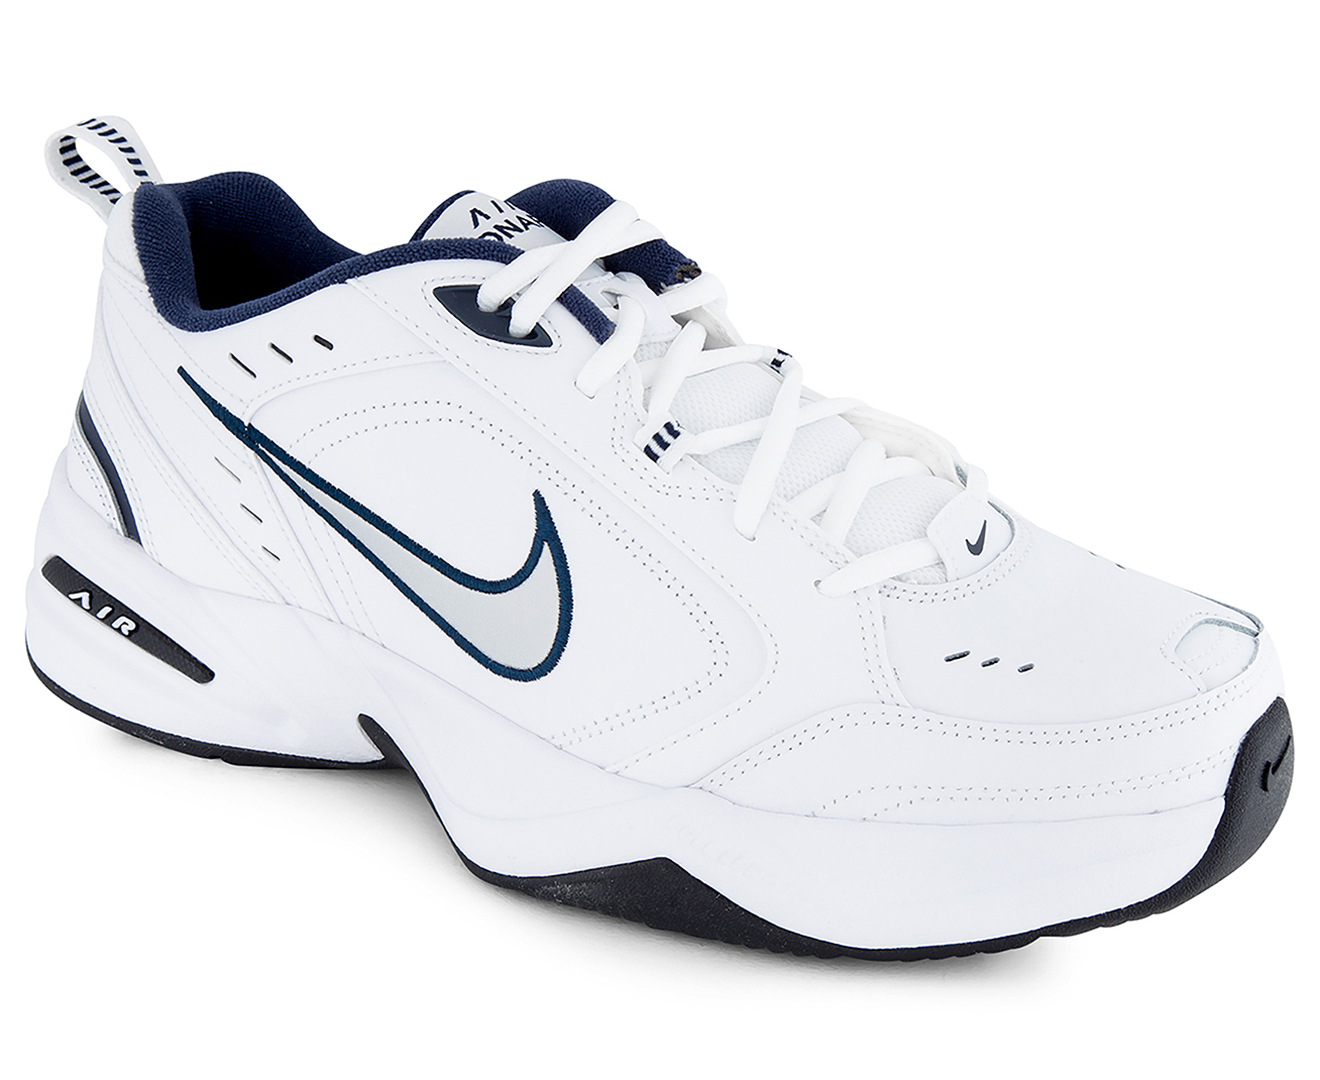 Nike Men's Air Monarch IV Shoe - White/Metallic Silver | eBay